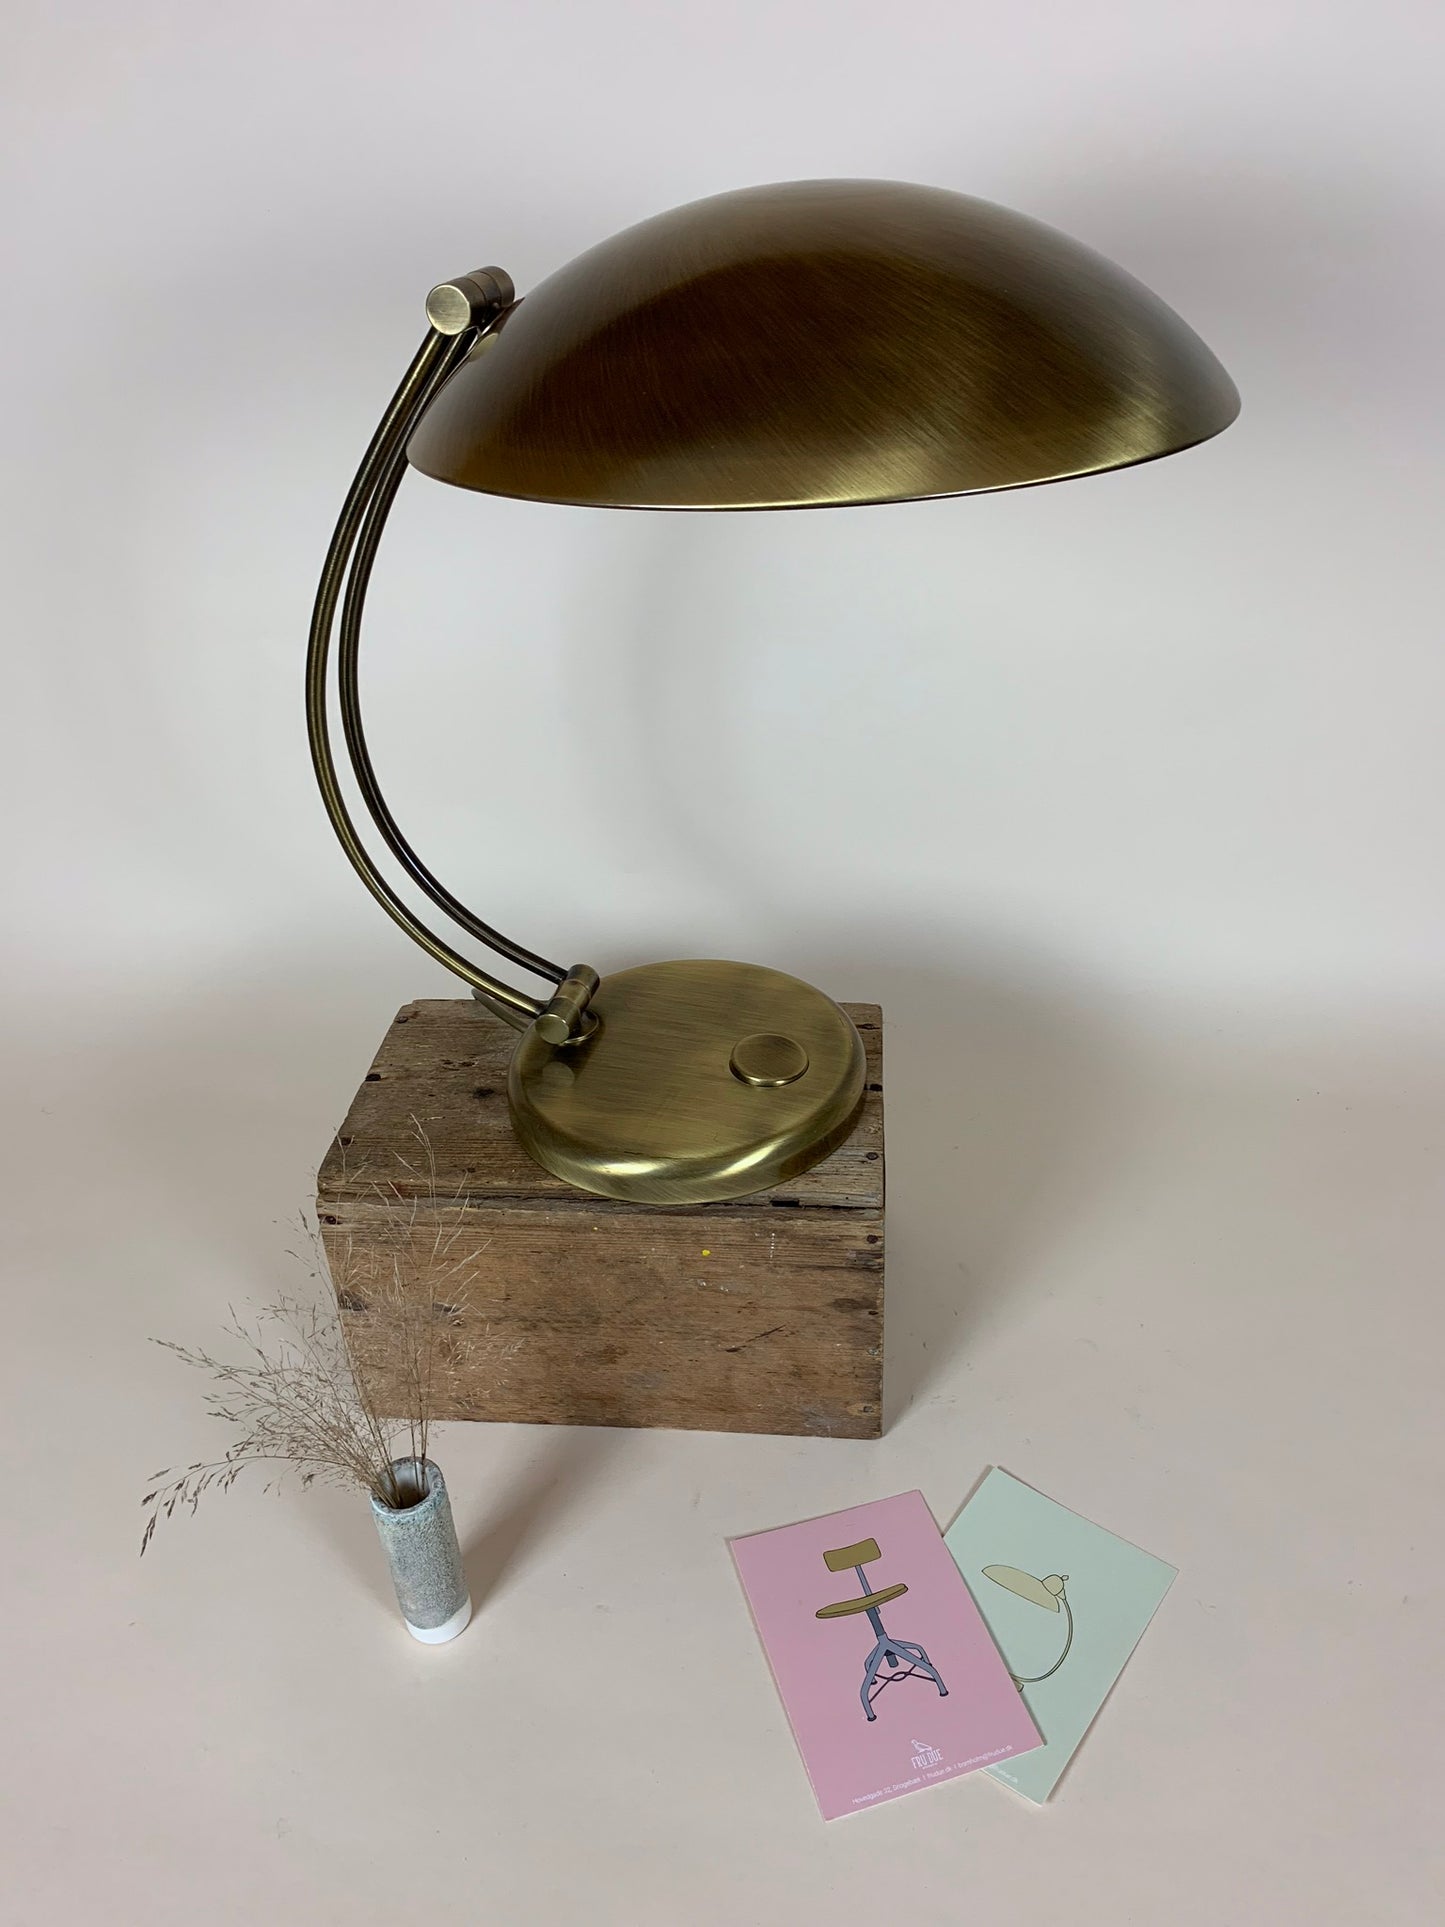 Hillebrand lampa från ca 1950 - Sällsynt exempel